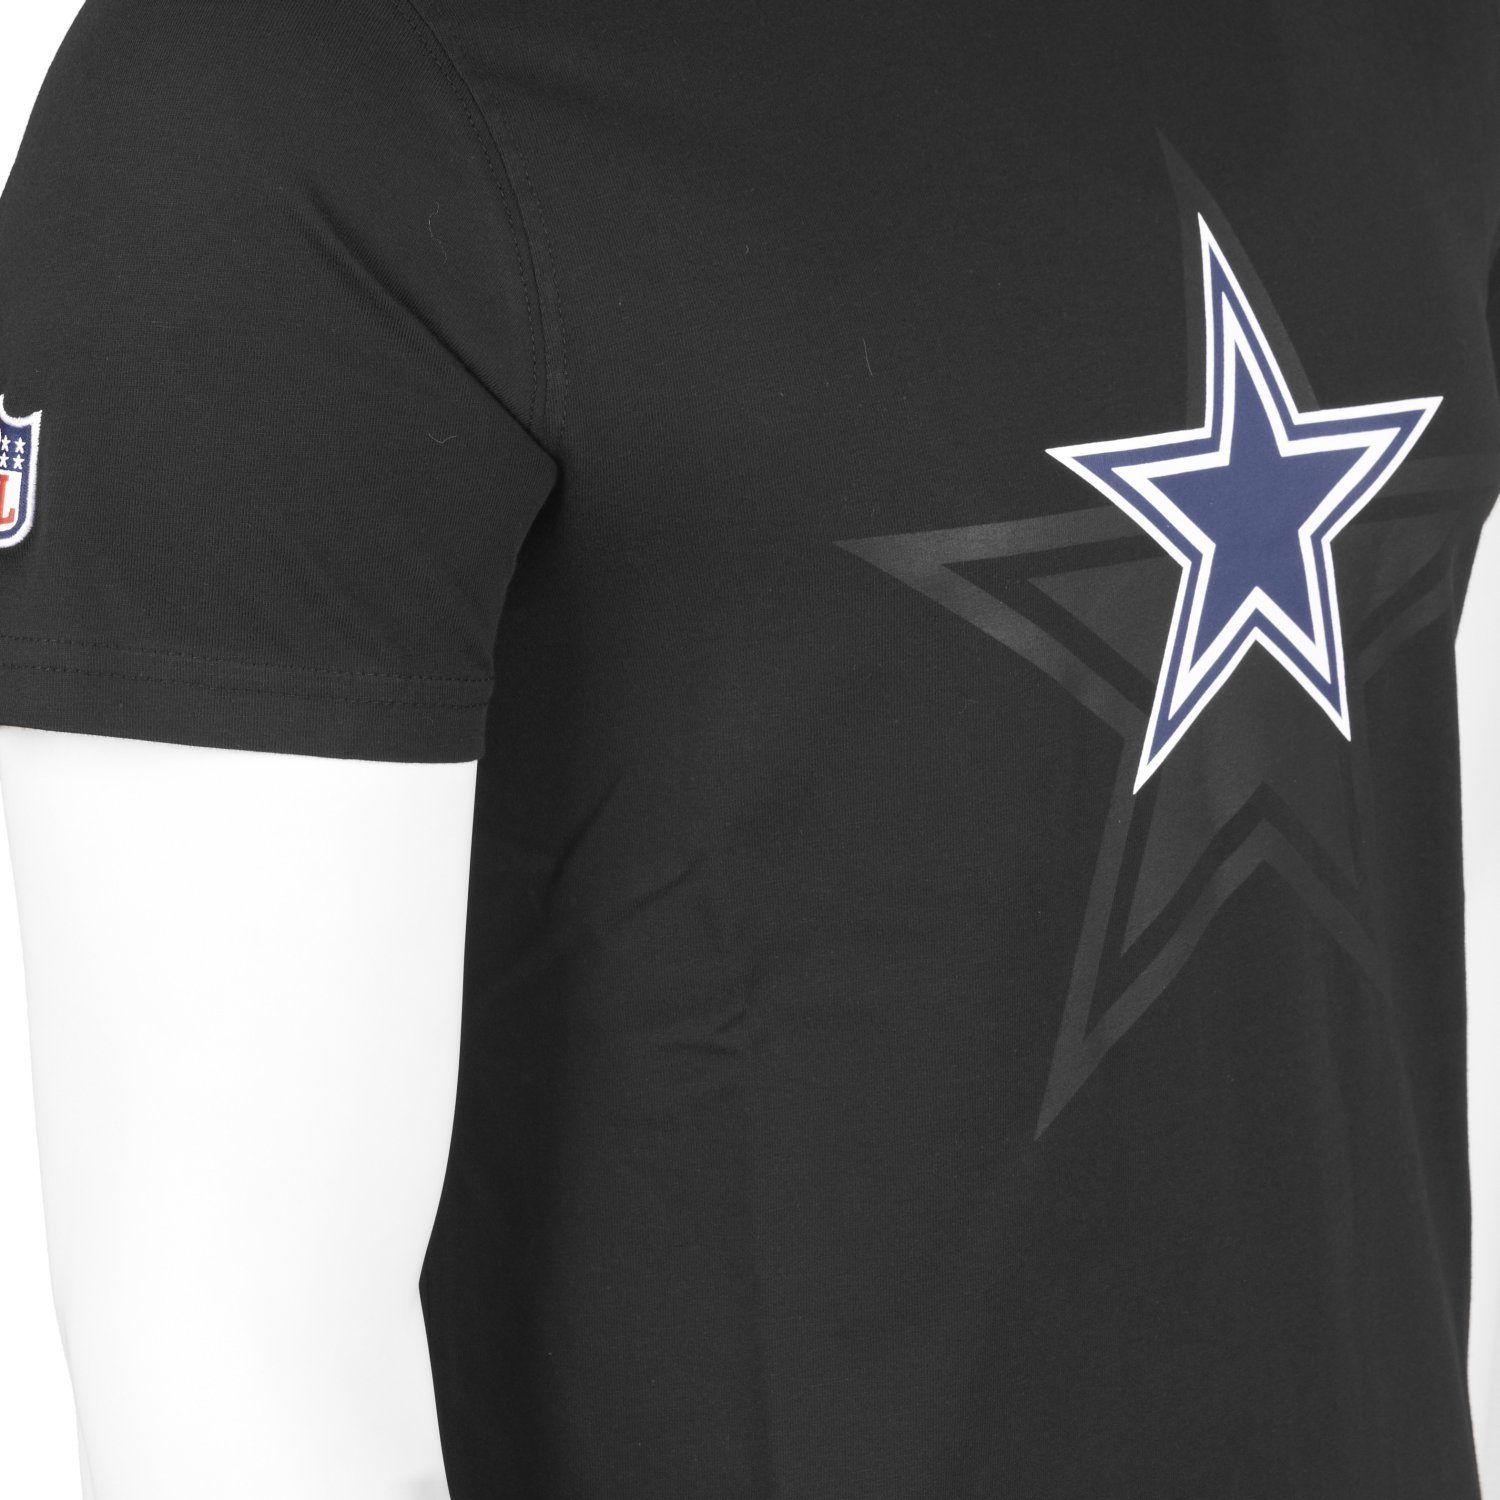 Print-Shirt 2.0 Dallas New Cowboys NFL Era